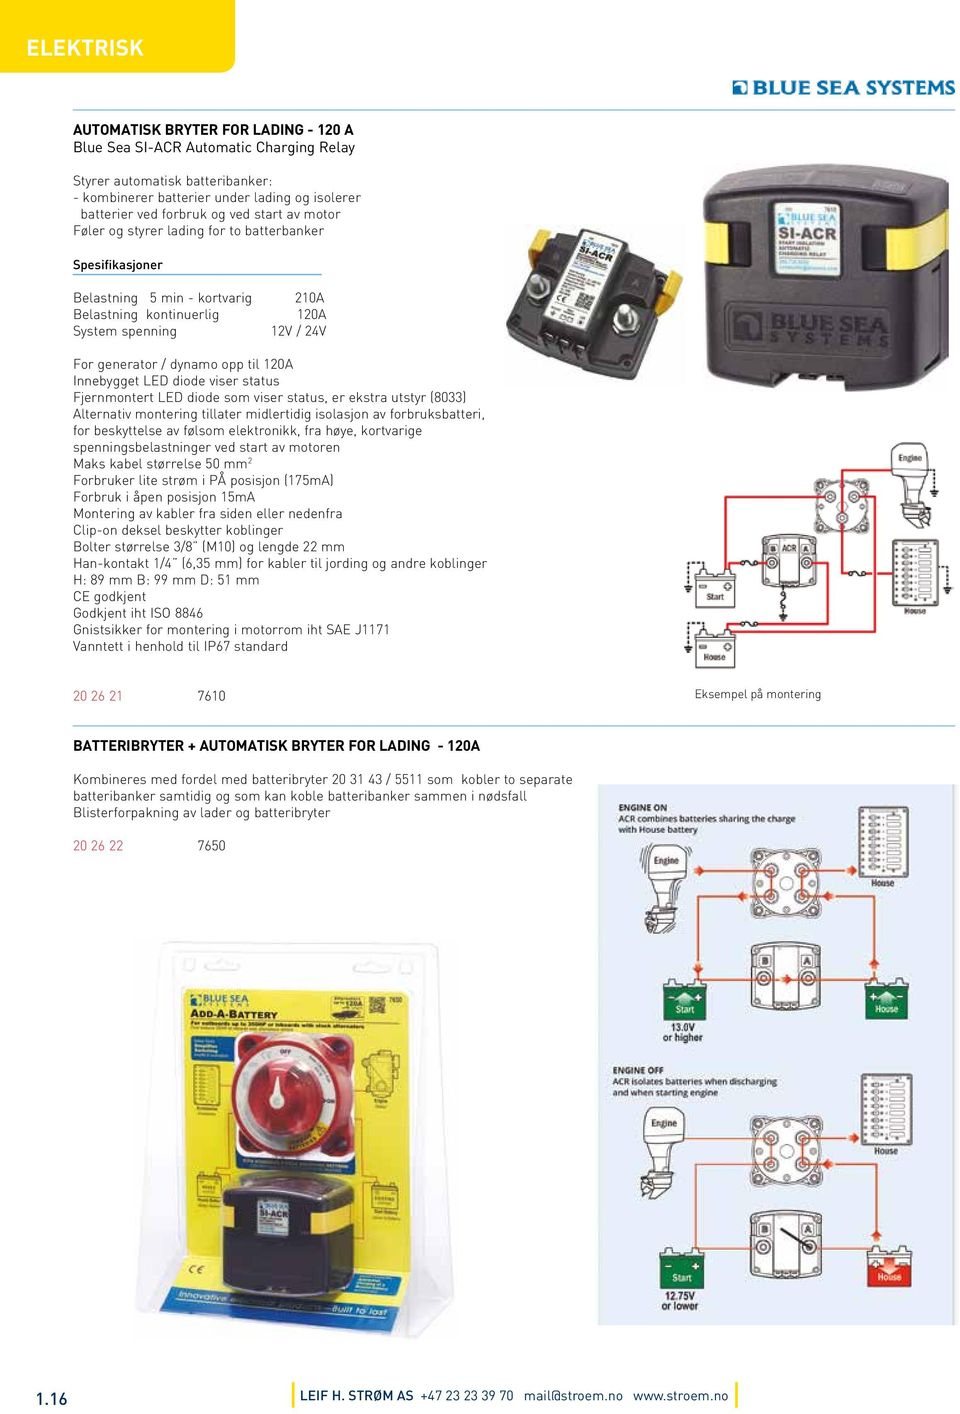 Innebygget LED diode viser status Fjernmontert LED diode som viser status, er ekstra utstyr (8033) Alternativ montering tillater midlertidig isolasjon av forbruksbatteri, for beskyttelse av følsom